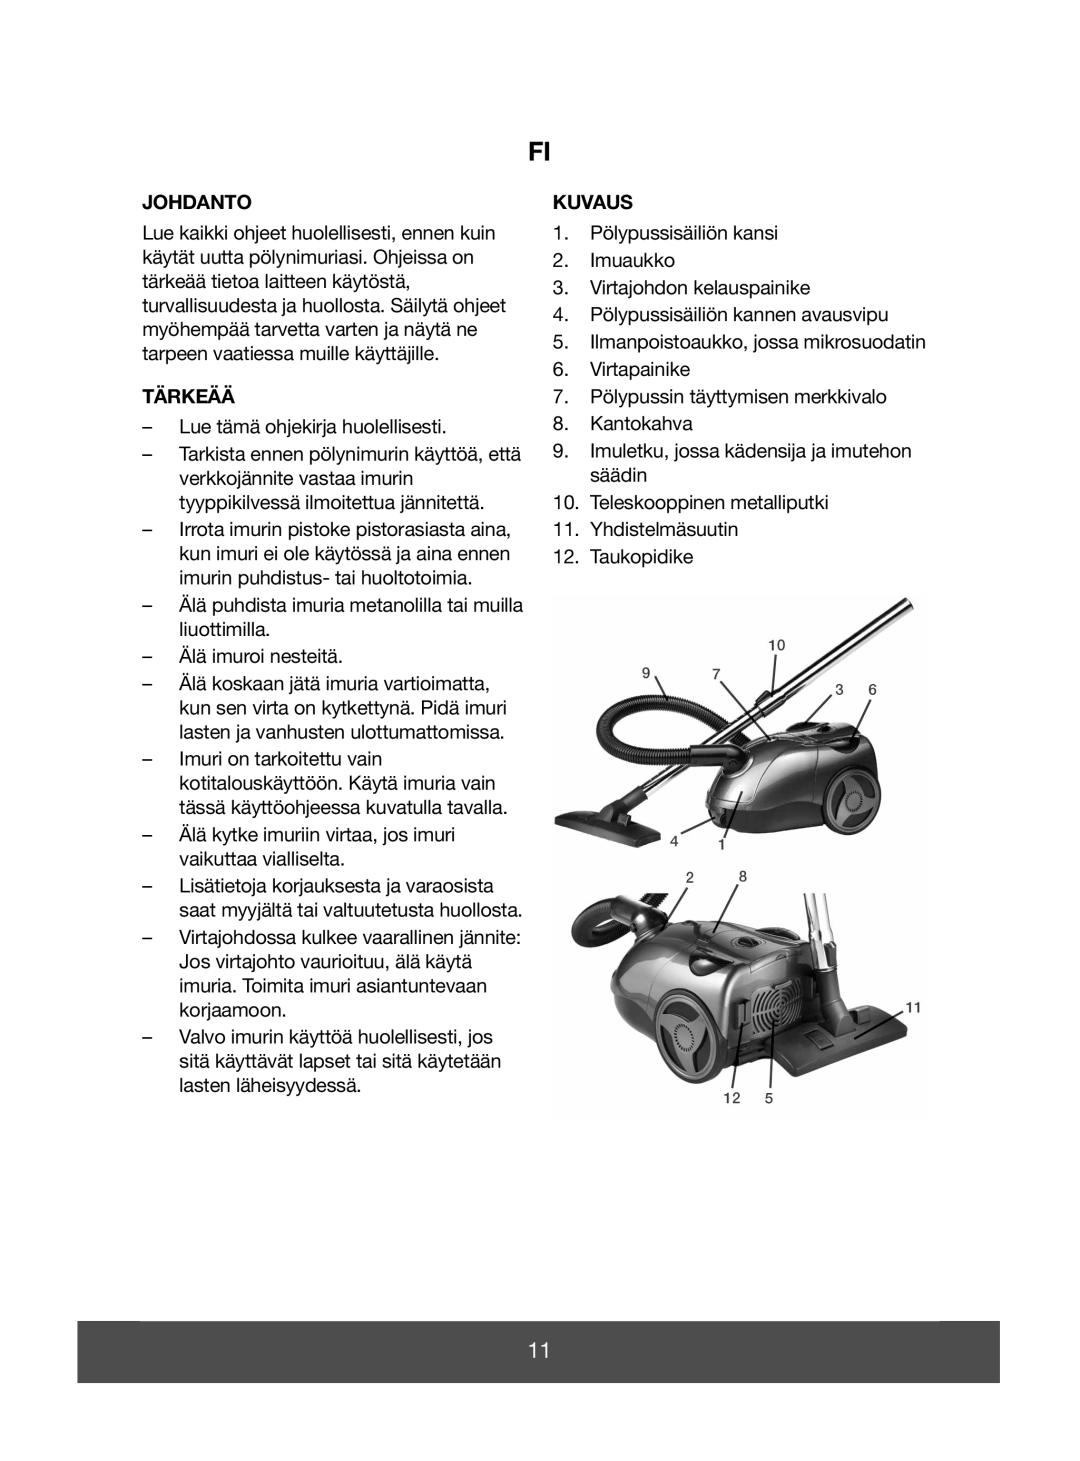 Melissa 640-045 manual Johdanto, Tärkeää, Kuvaus 